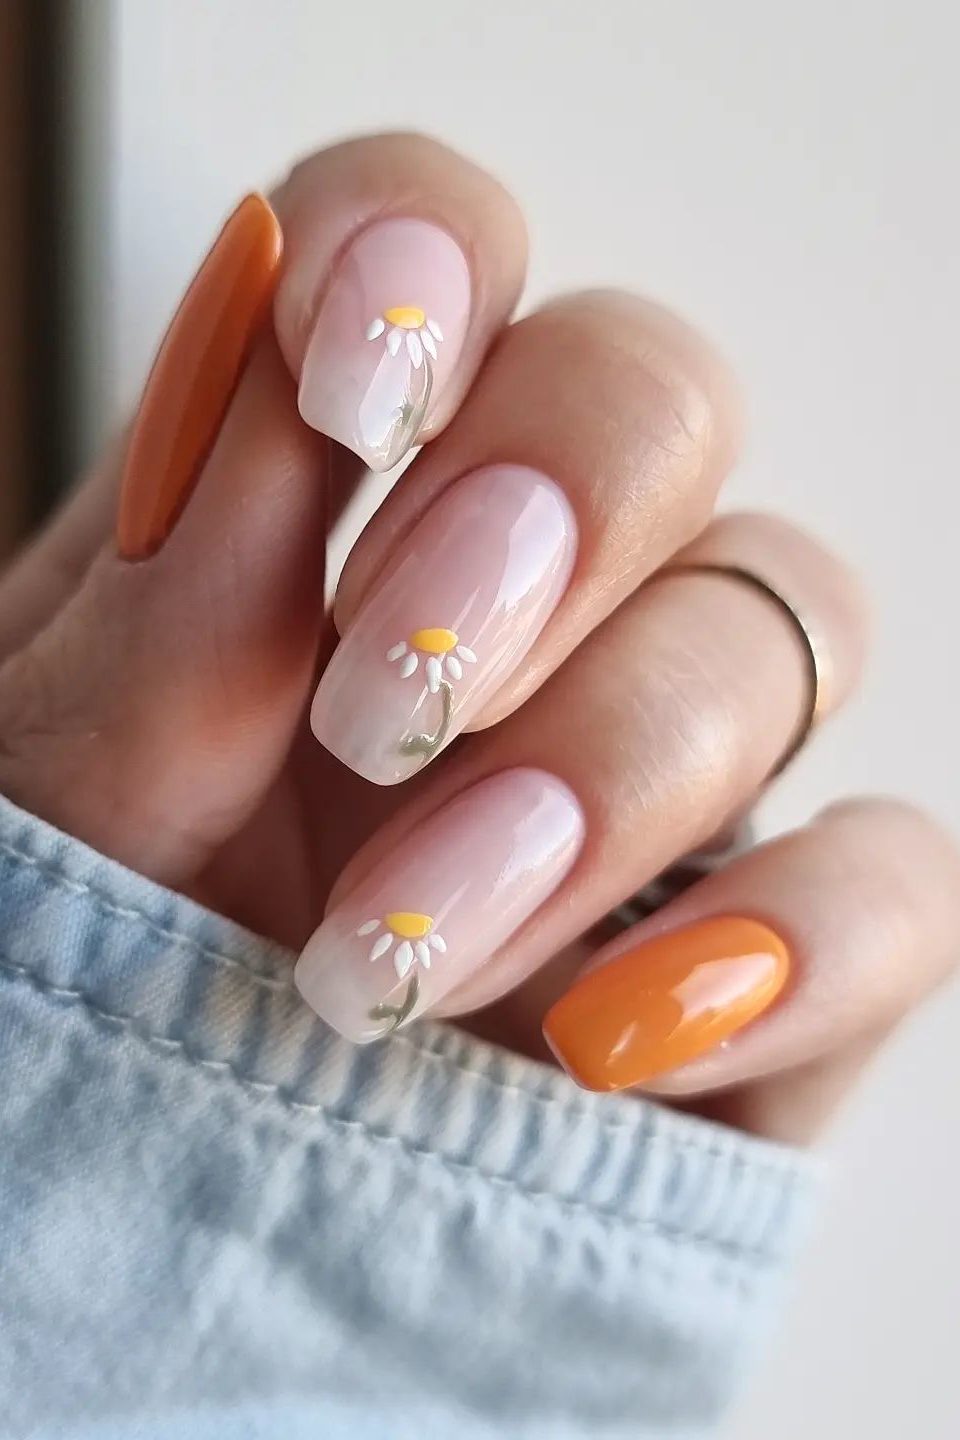 Daisy nails, daisy art